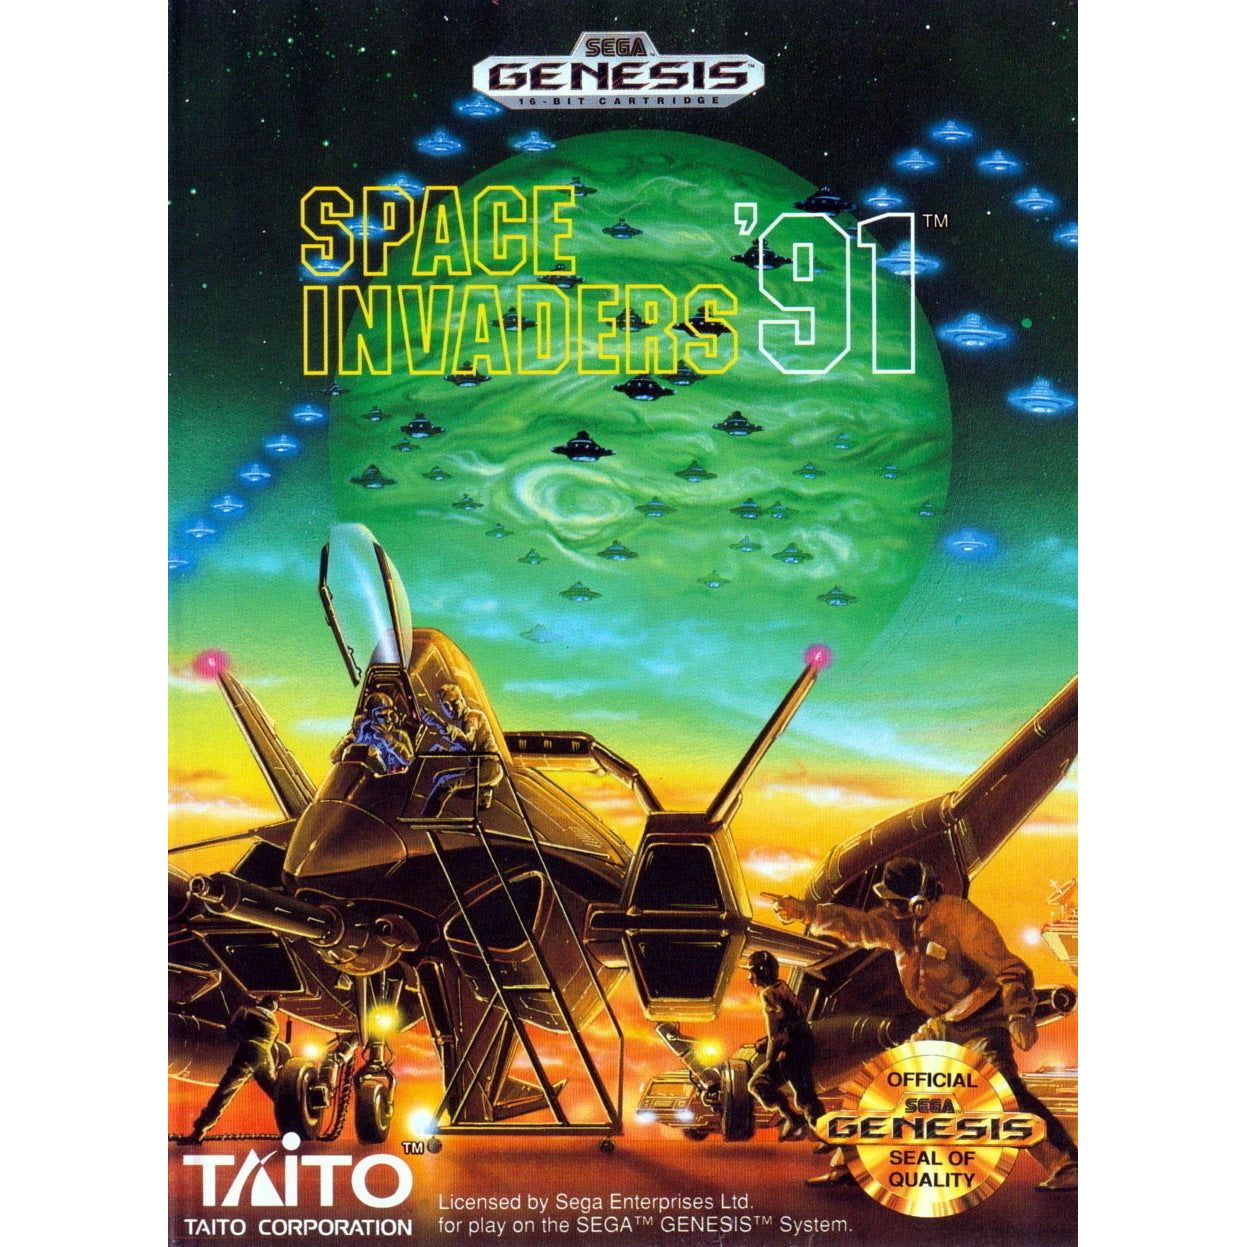 Genesis - Space Invaders 91 (In Case)